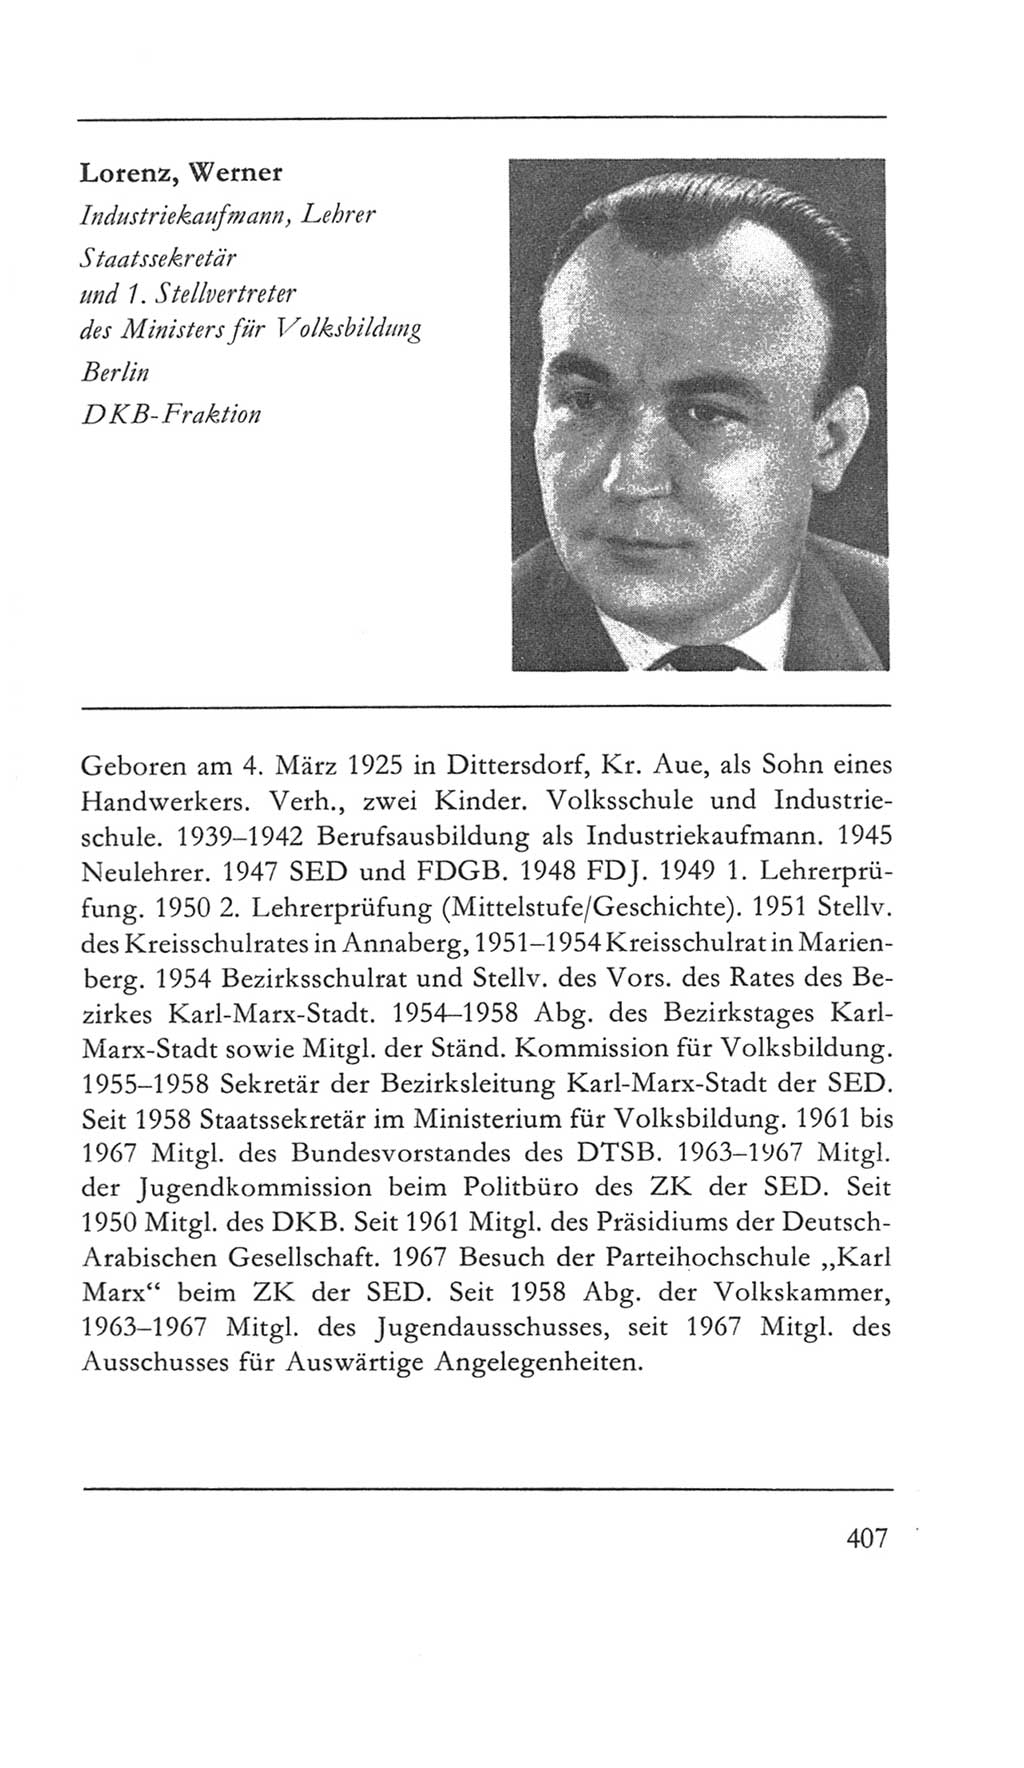 Volkskammer (VK) der Deutschen Demokratischen Republik (DDR) 5. Wahlperiode 1967-1971, Seite 407 (VK. DDR 5. WP. 1967-1971, S. 407)